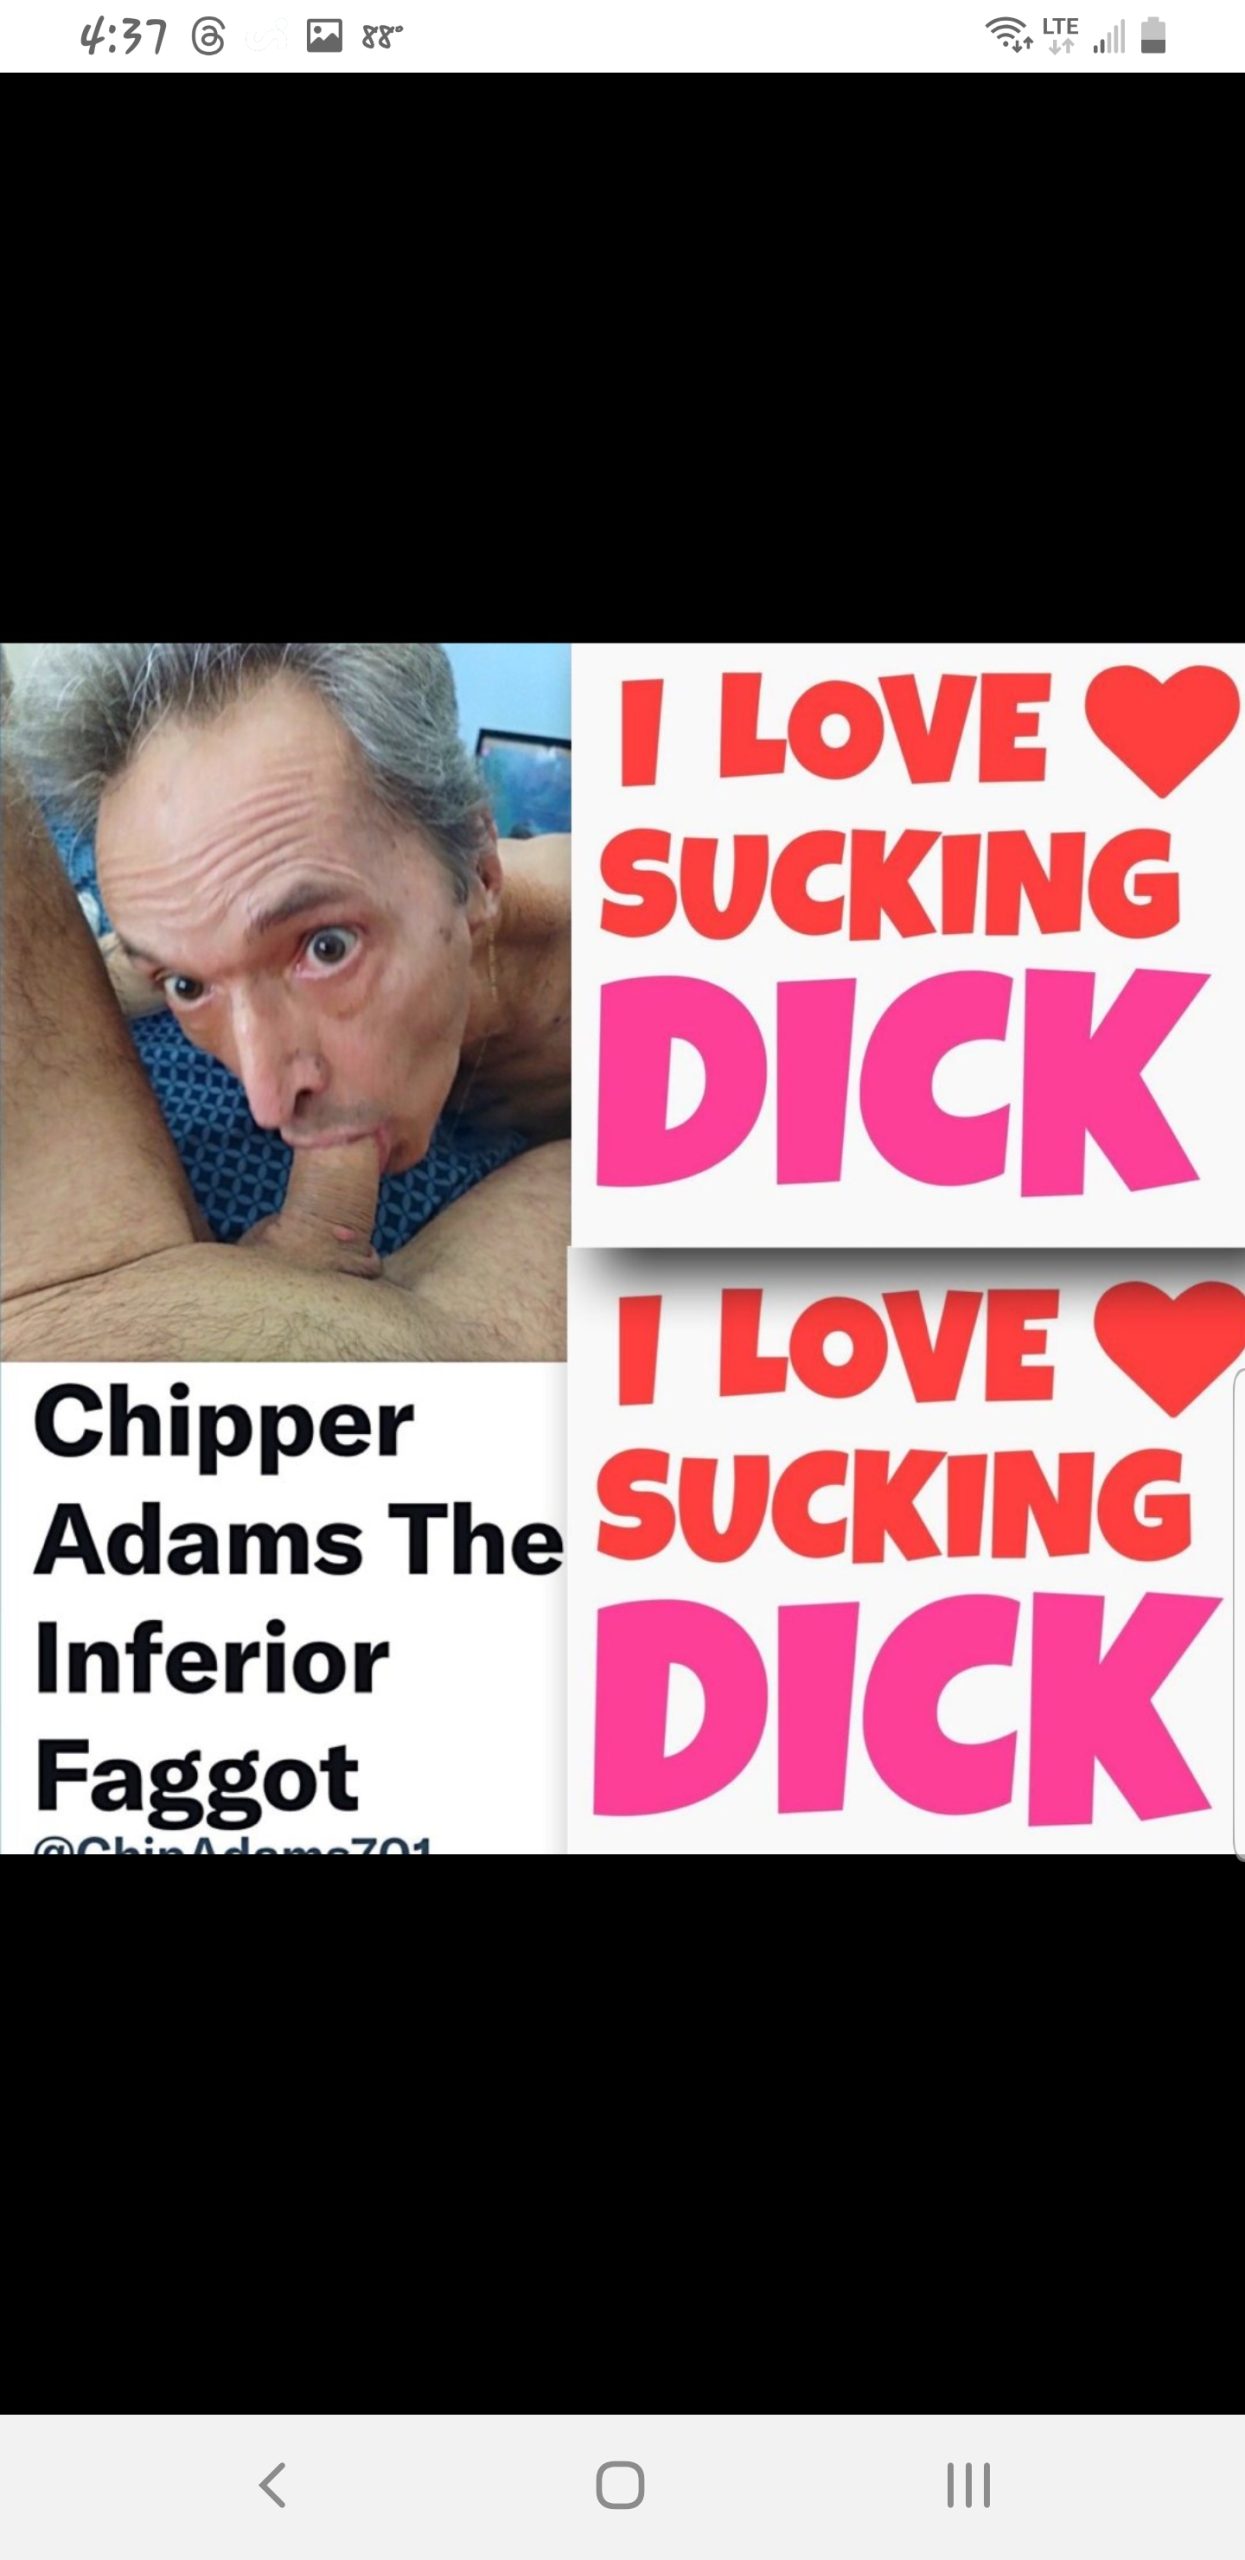 Chipper Adams loves cock